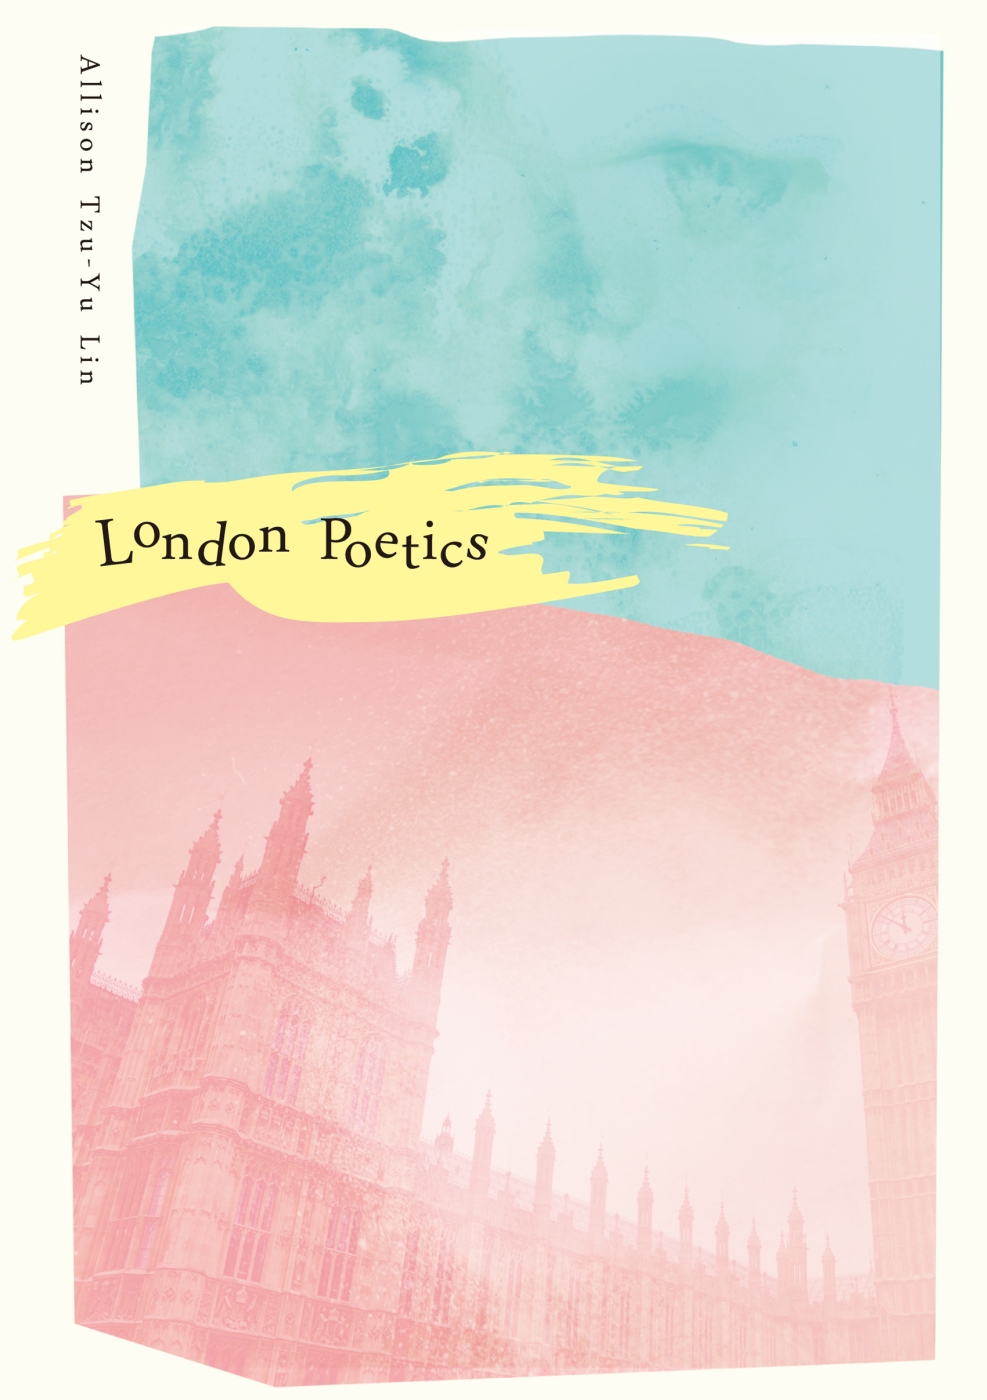 London Poetics